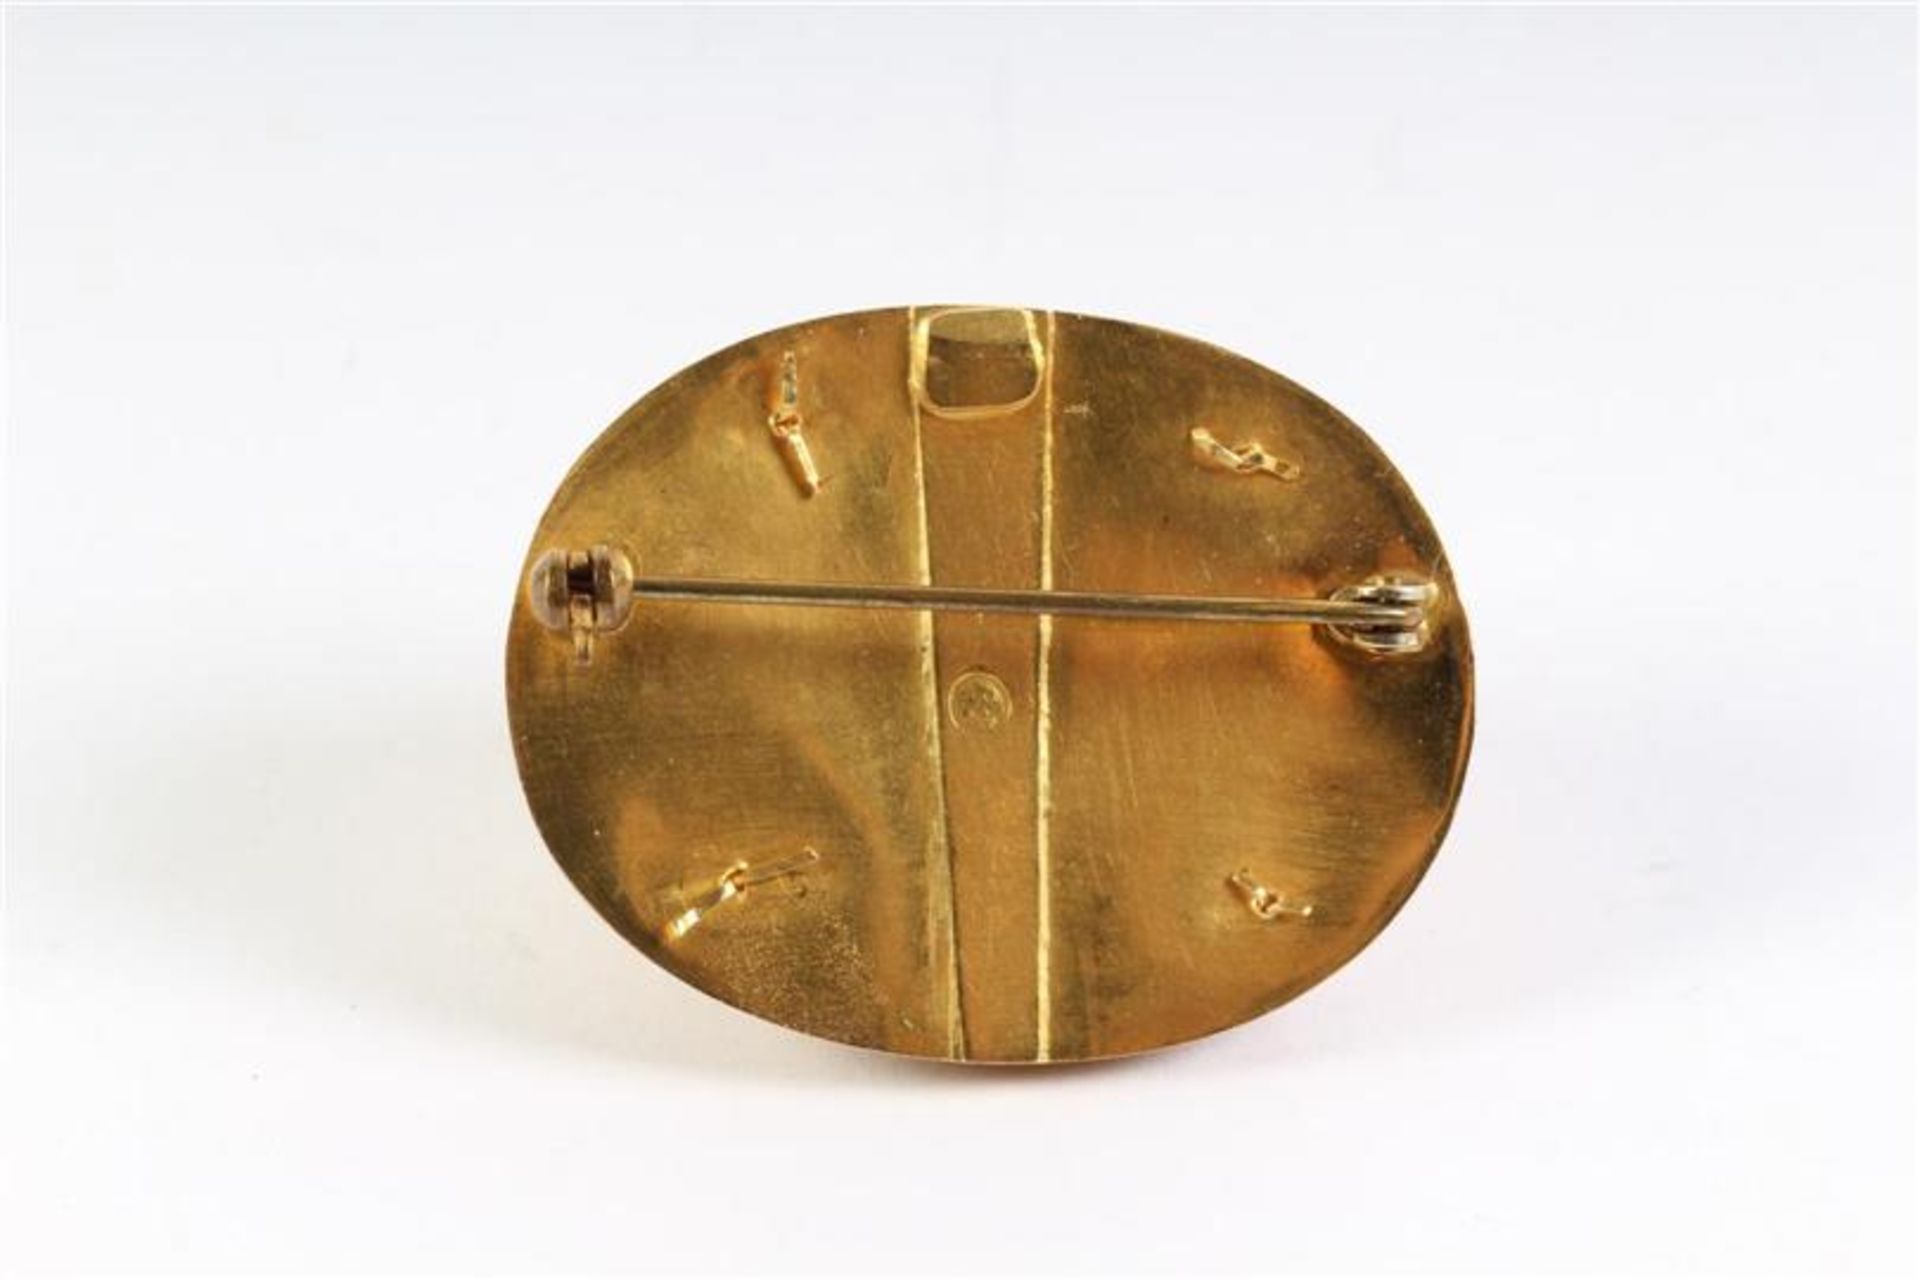 Gouden broche vermaakt van slot, Hollands gekeurd, speld ondedel. Gewicht: 10.5 g. - Image 3 of 3